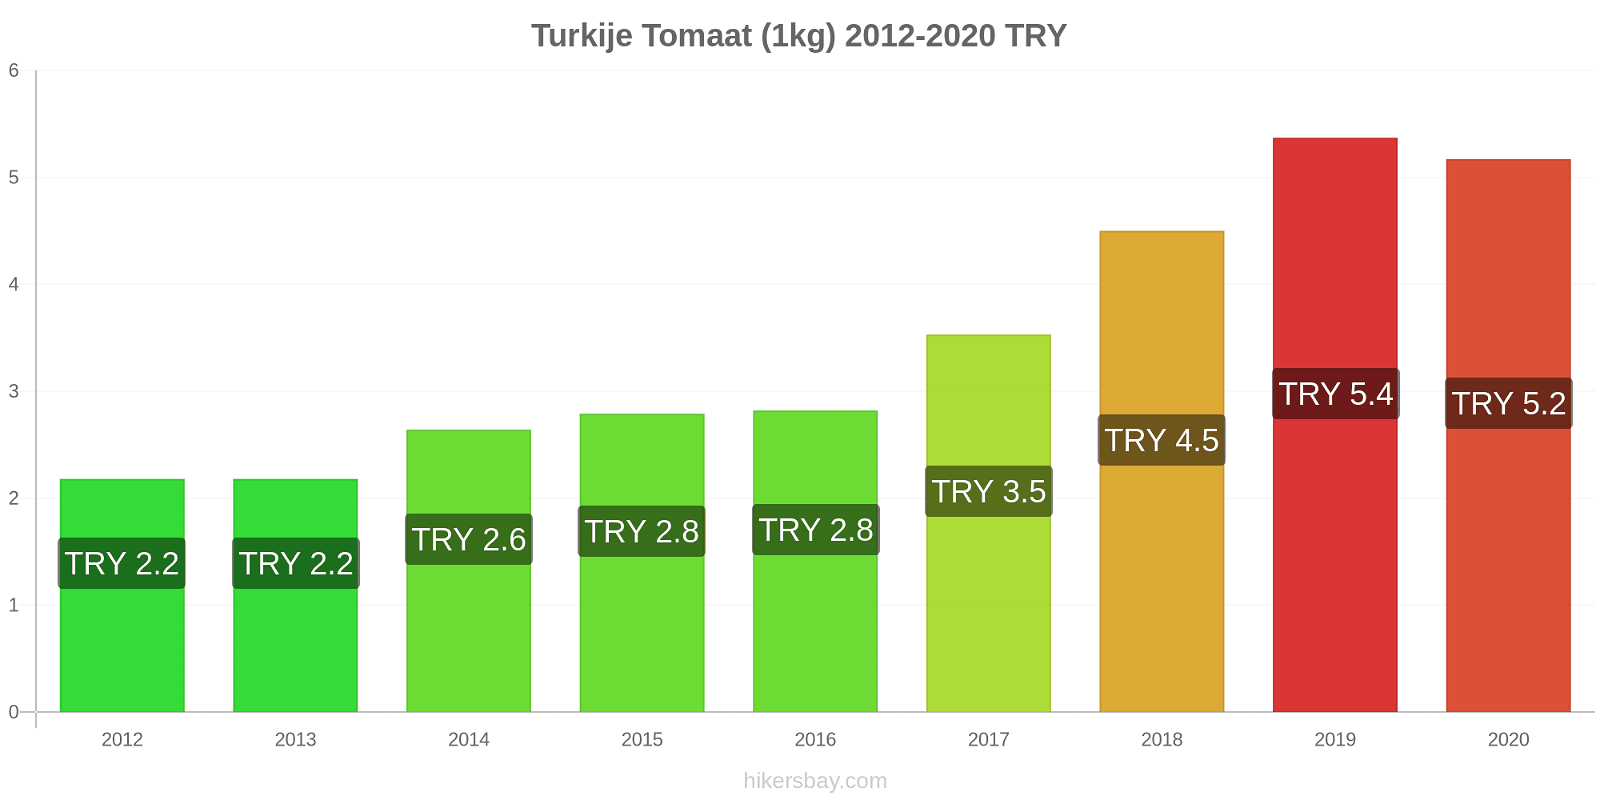 Turkije prijswijzigingen Tomaat (1kg) hikersbay.com